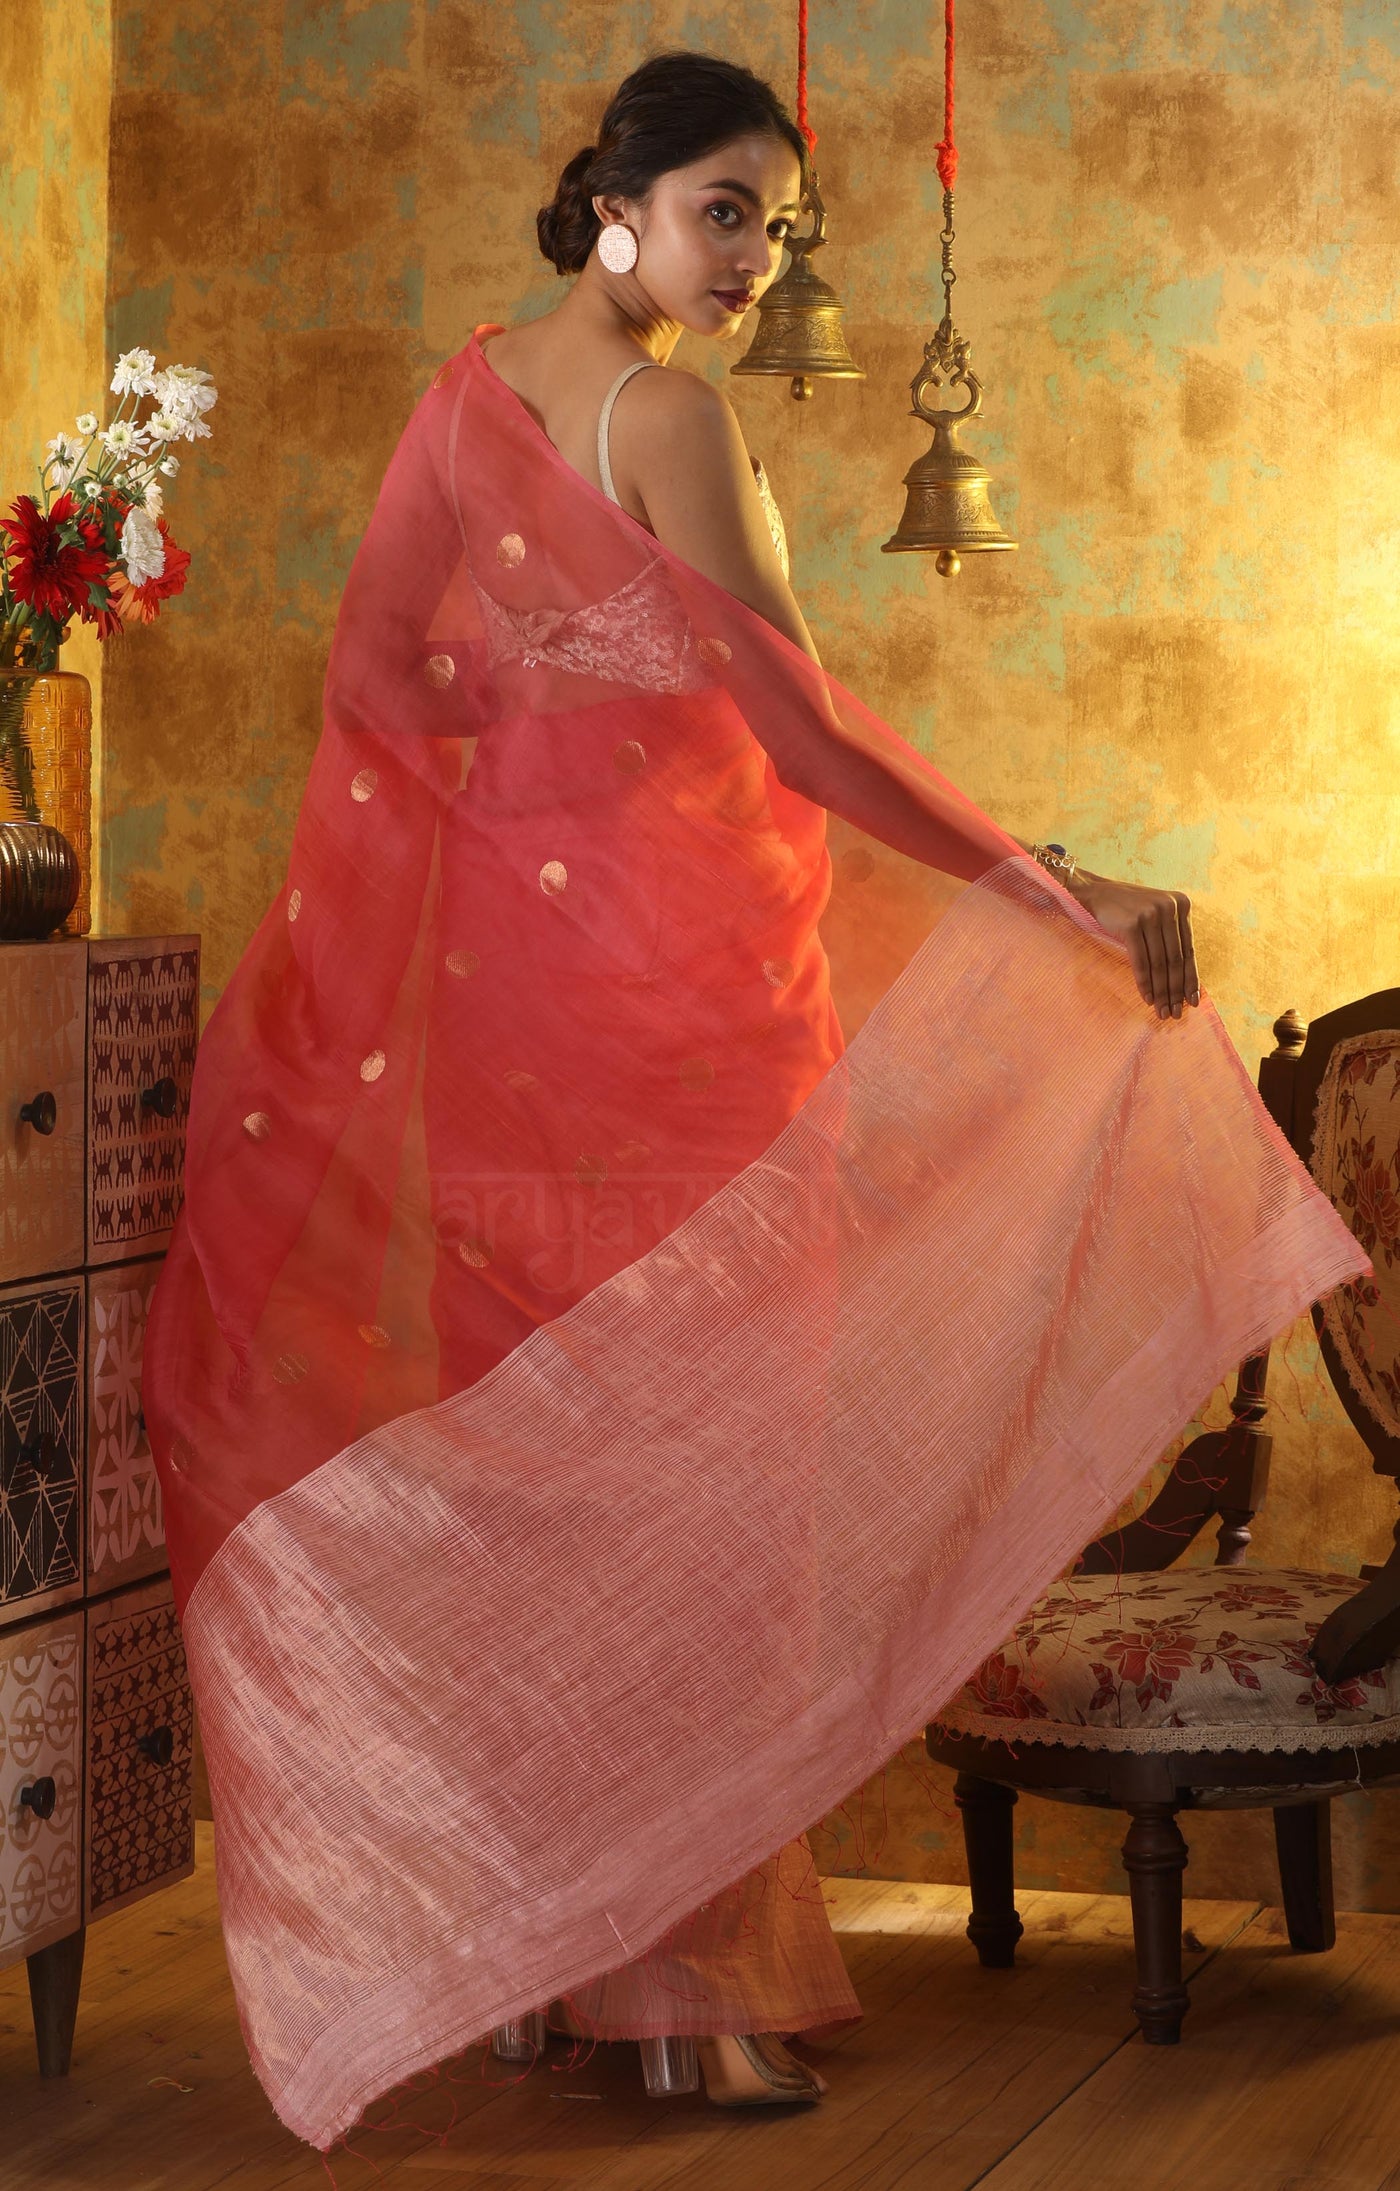 Blush Pink Matka Silk Saree With Zari Polka Dot Butta